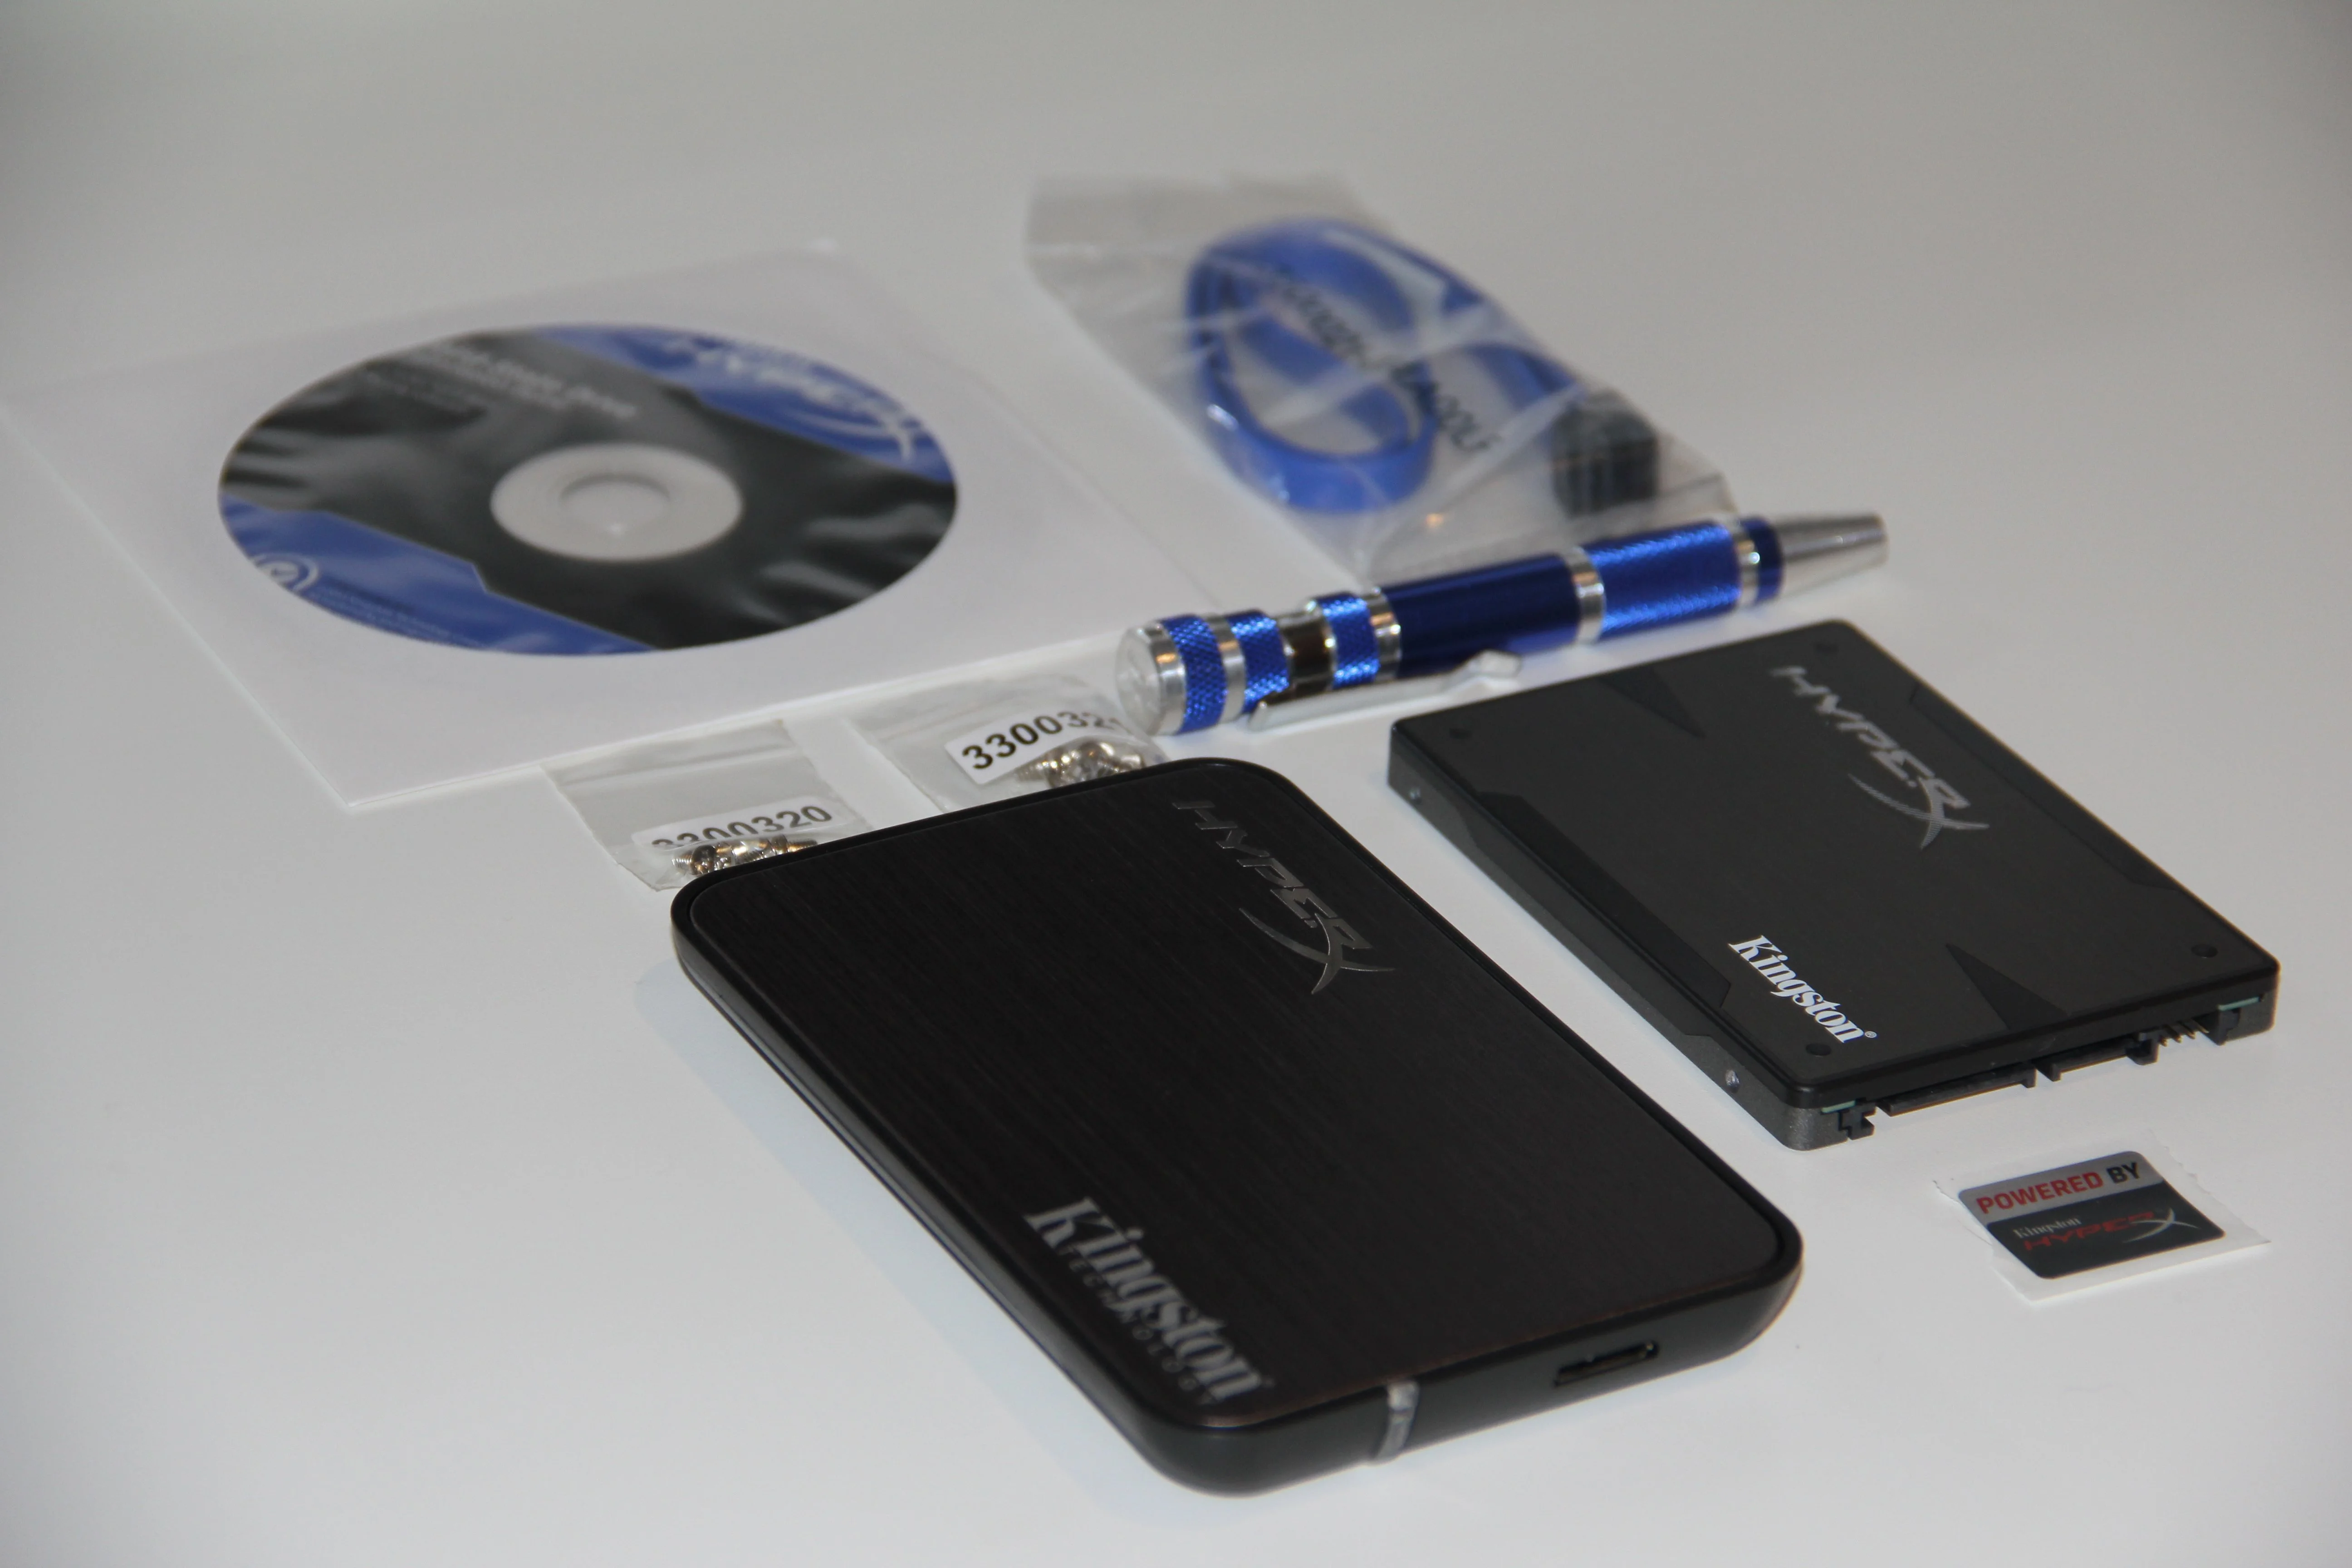 Горячее железо: Kingston HyperX 3K SSD 480GB - фото 2